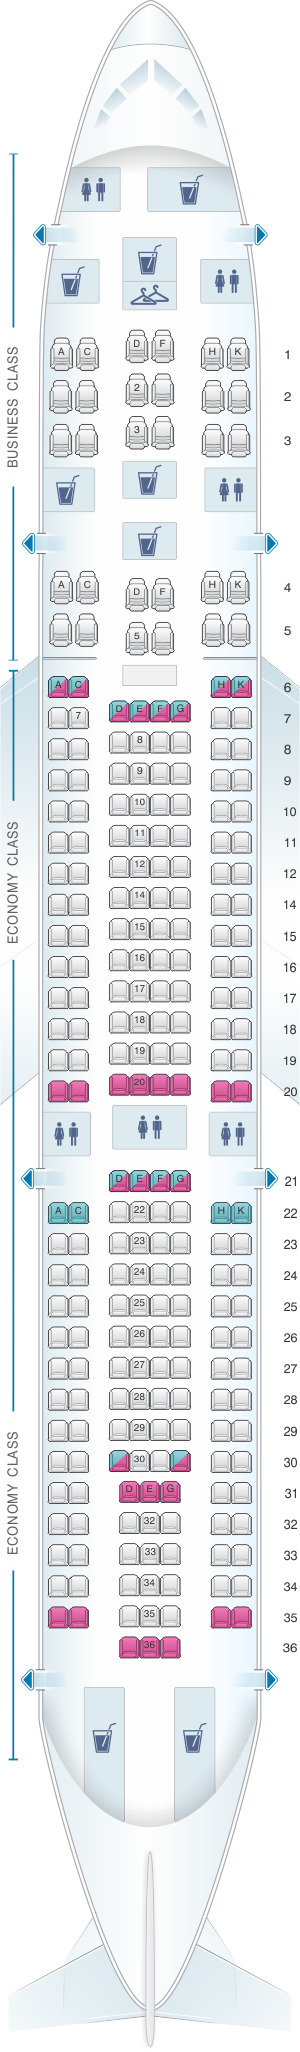 Seat Map Avianca Airbus A330 | SeatMaestro.com